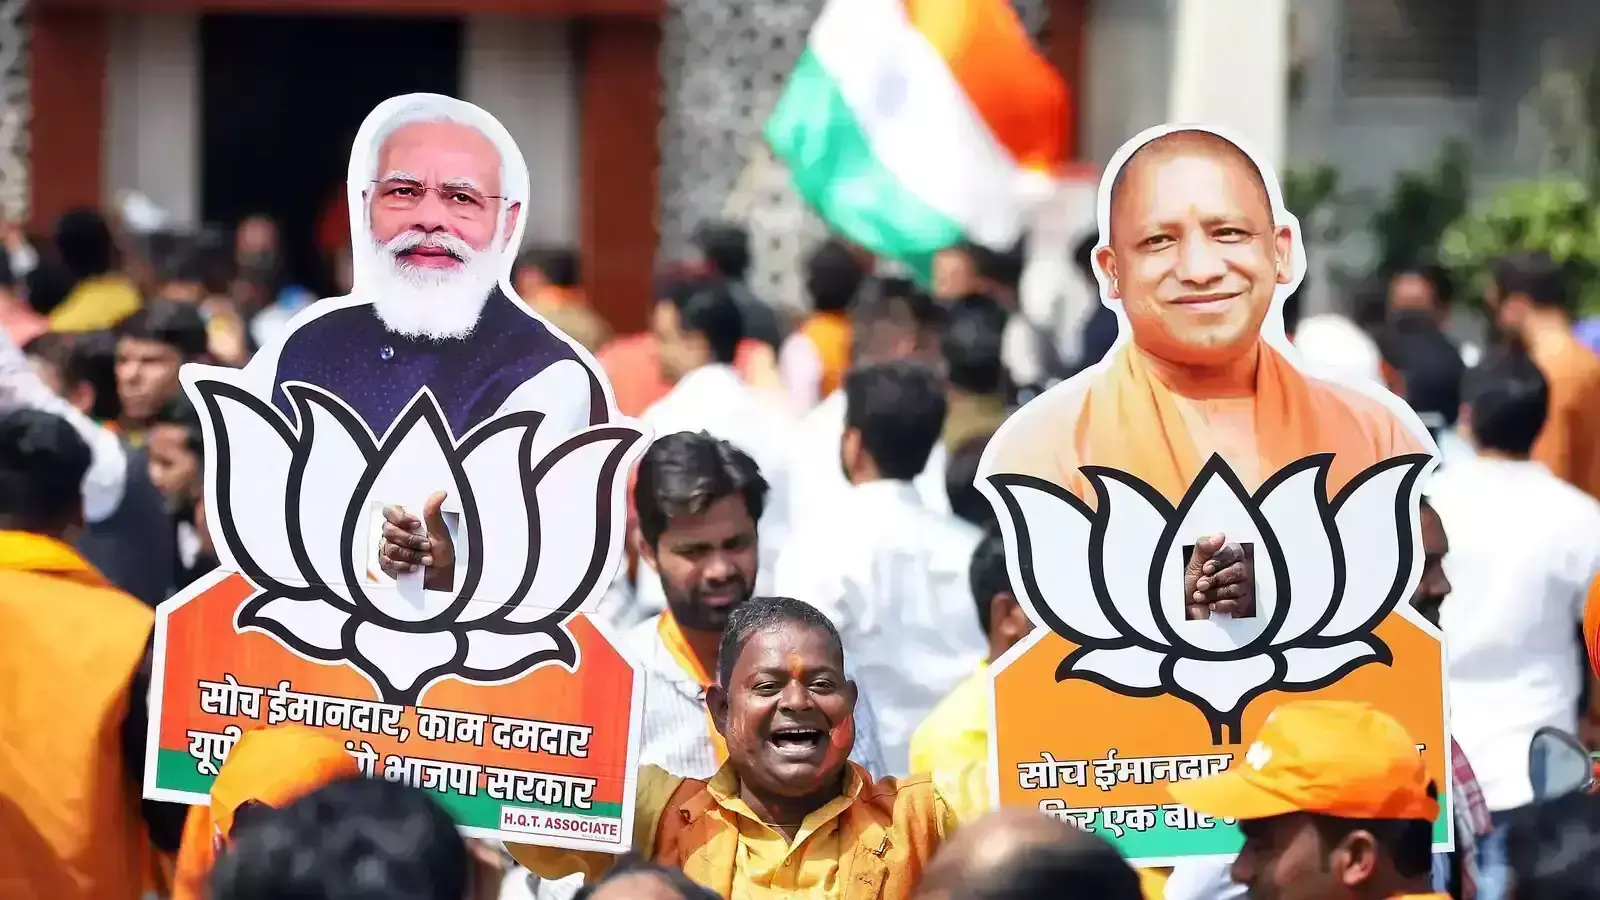 Lucknow: भारतीय जनता पार्टी ने 4 जून को मतगणना को लेकर अपनी ओर से तैयारी पूरी की